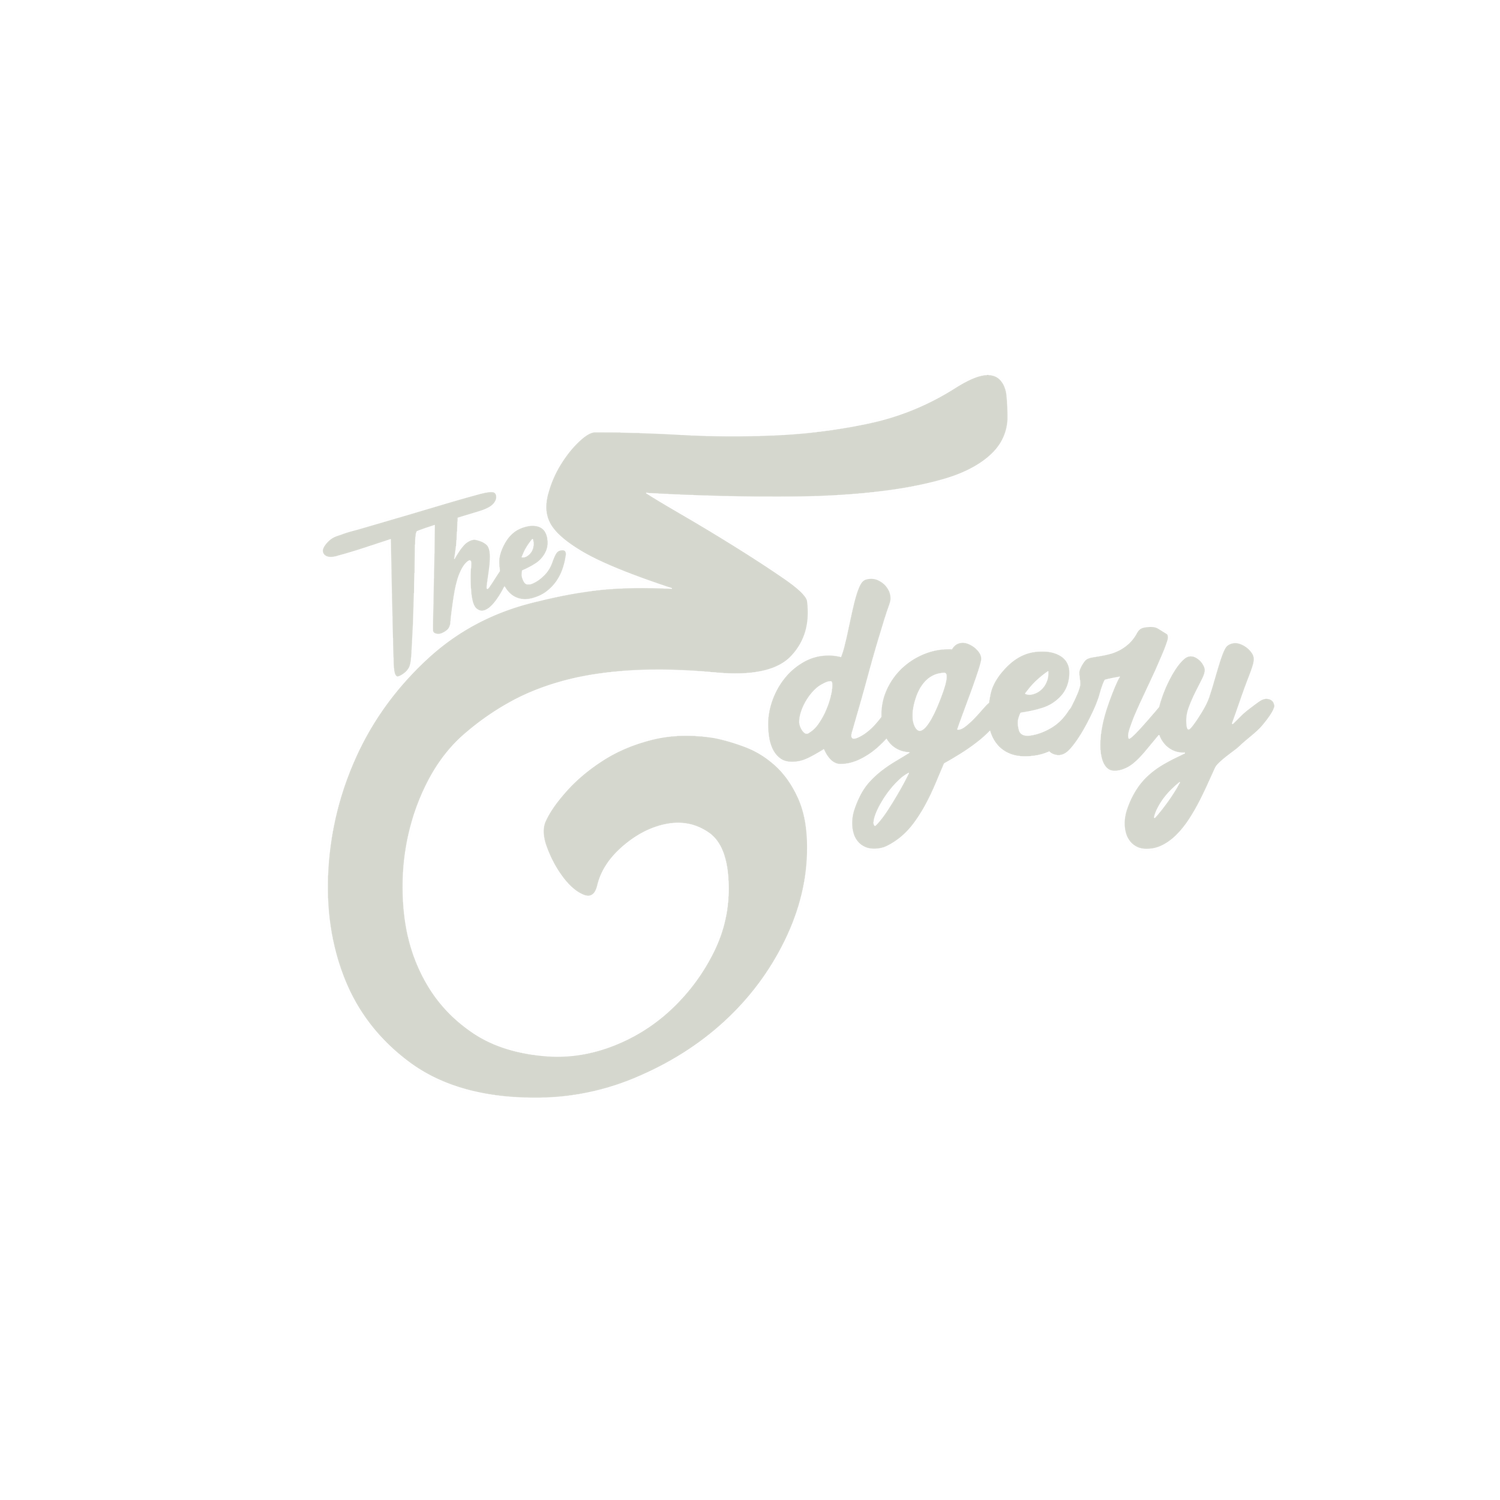 The Edgery